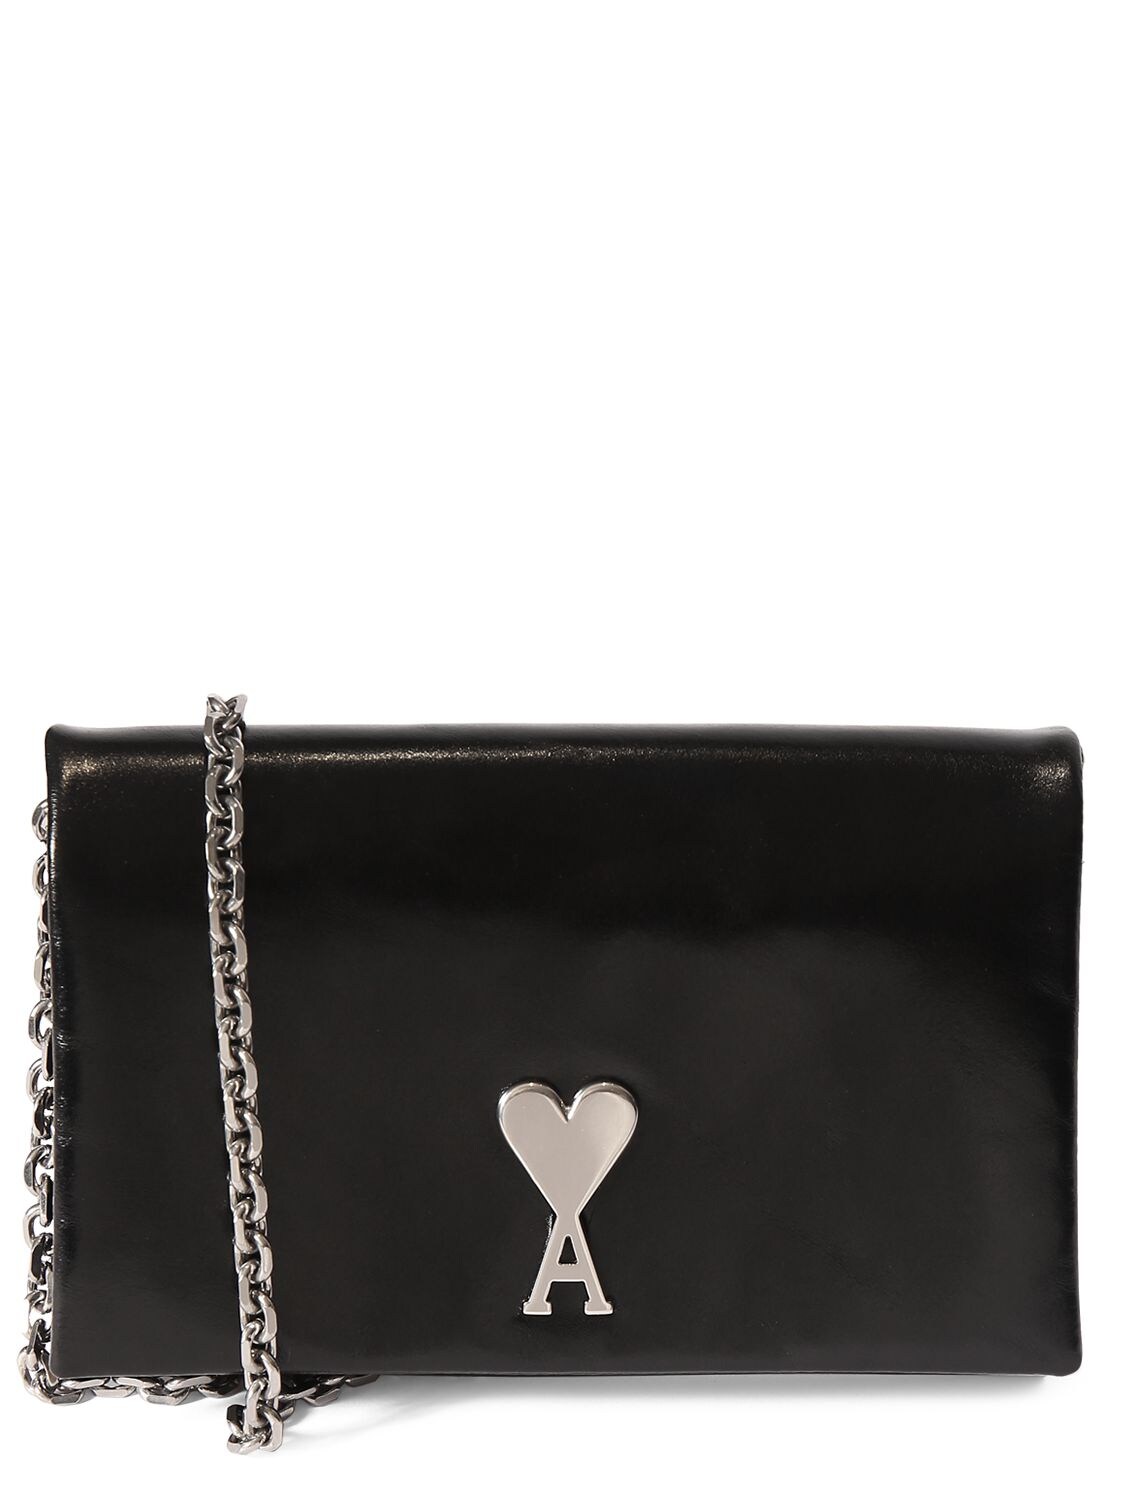 Shop Ami Alexandre Mattiussi Voulez Vous Leather Wallet W/ Chain In Black